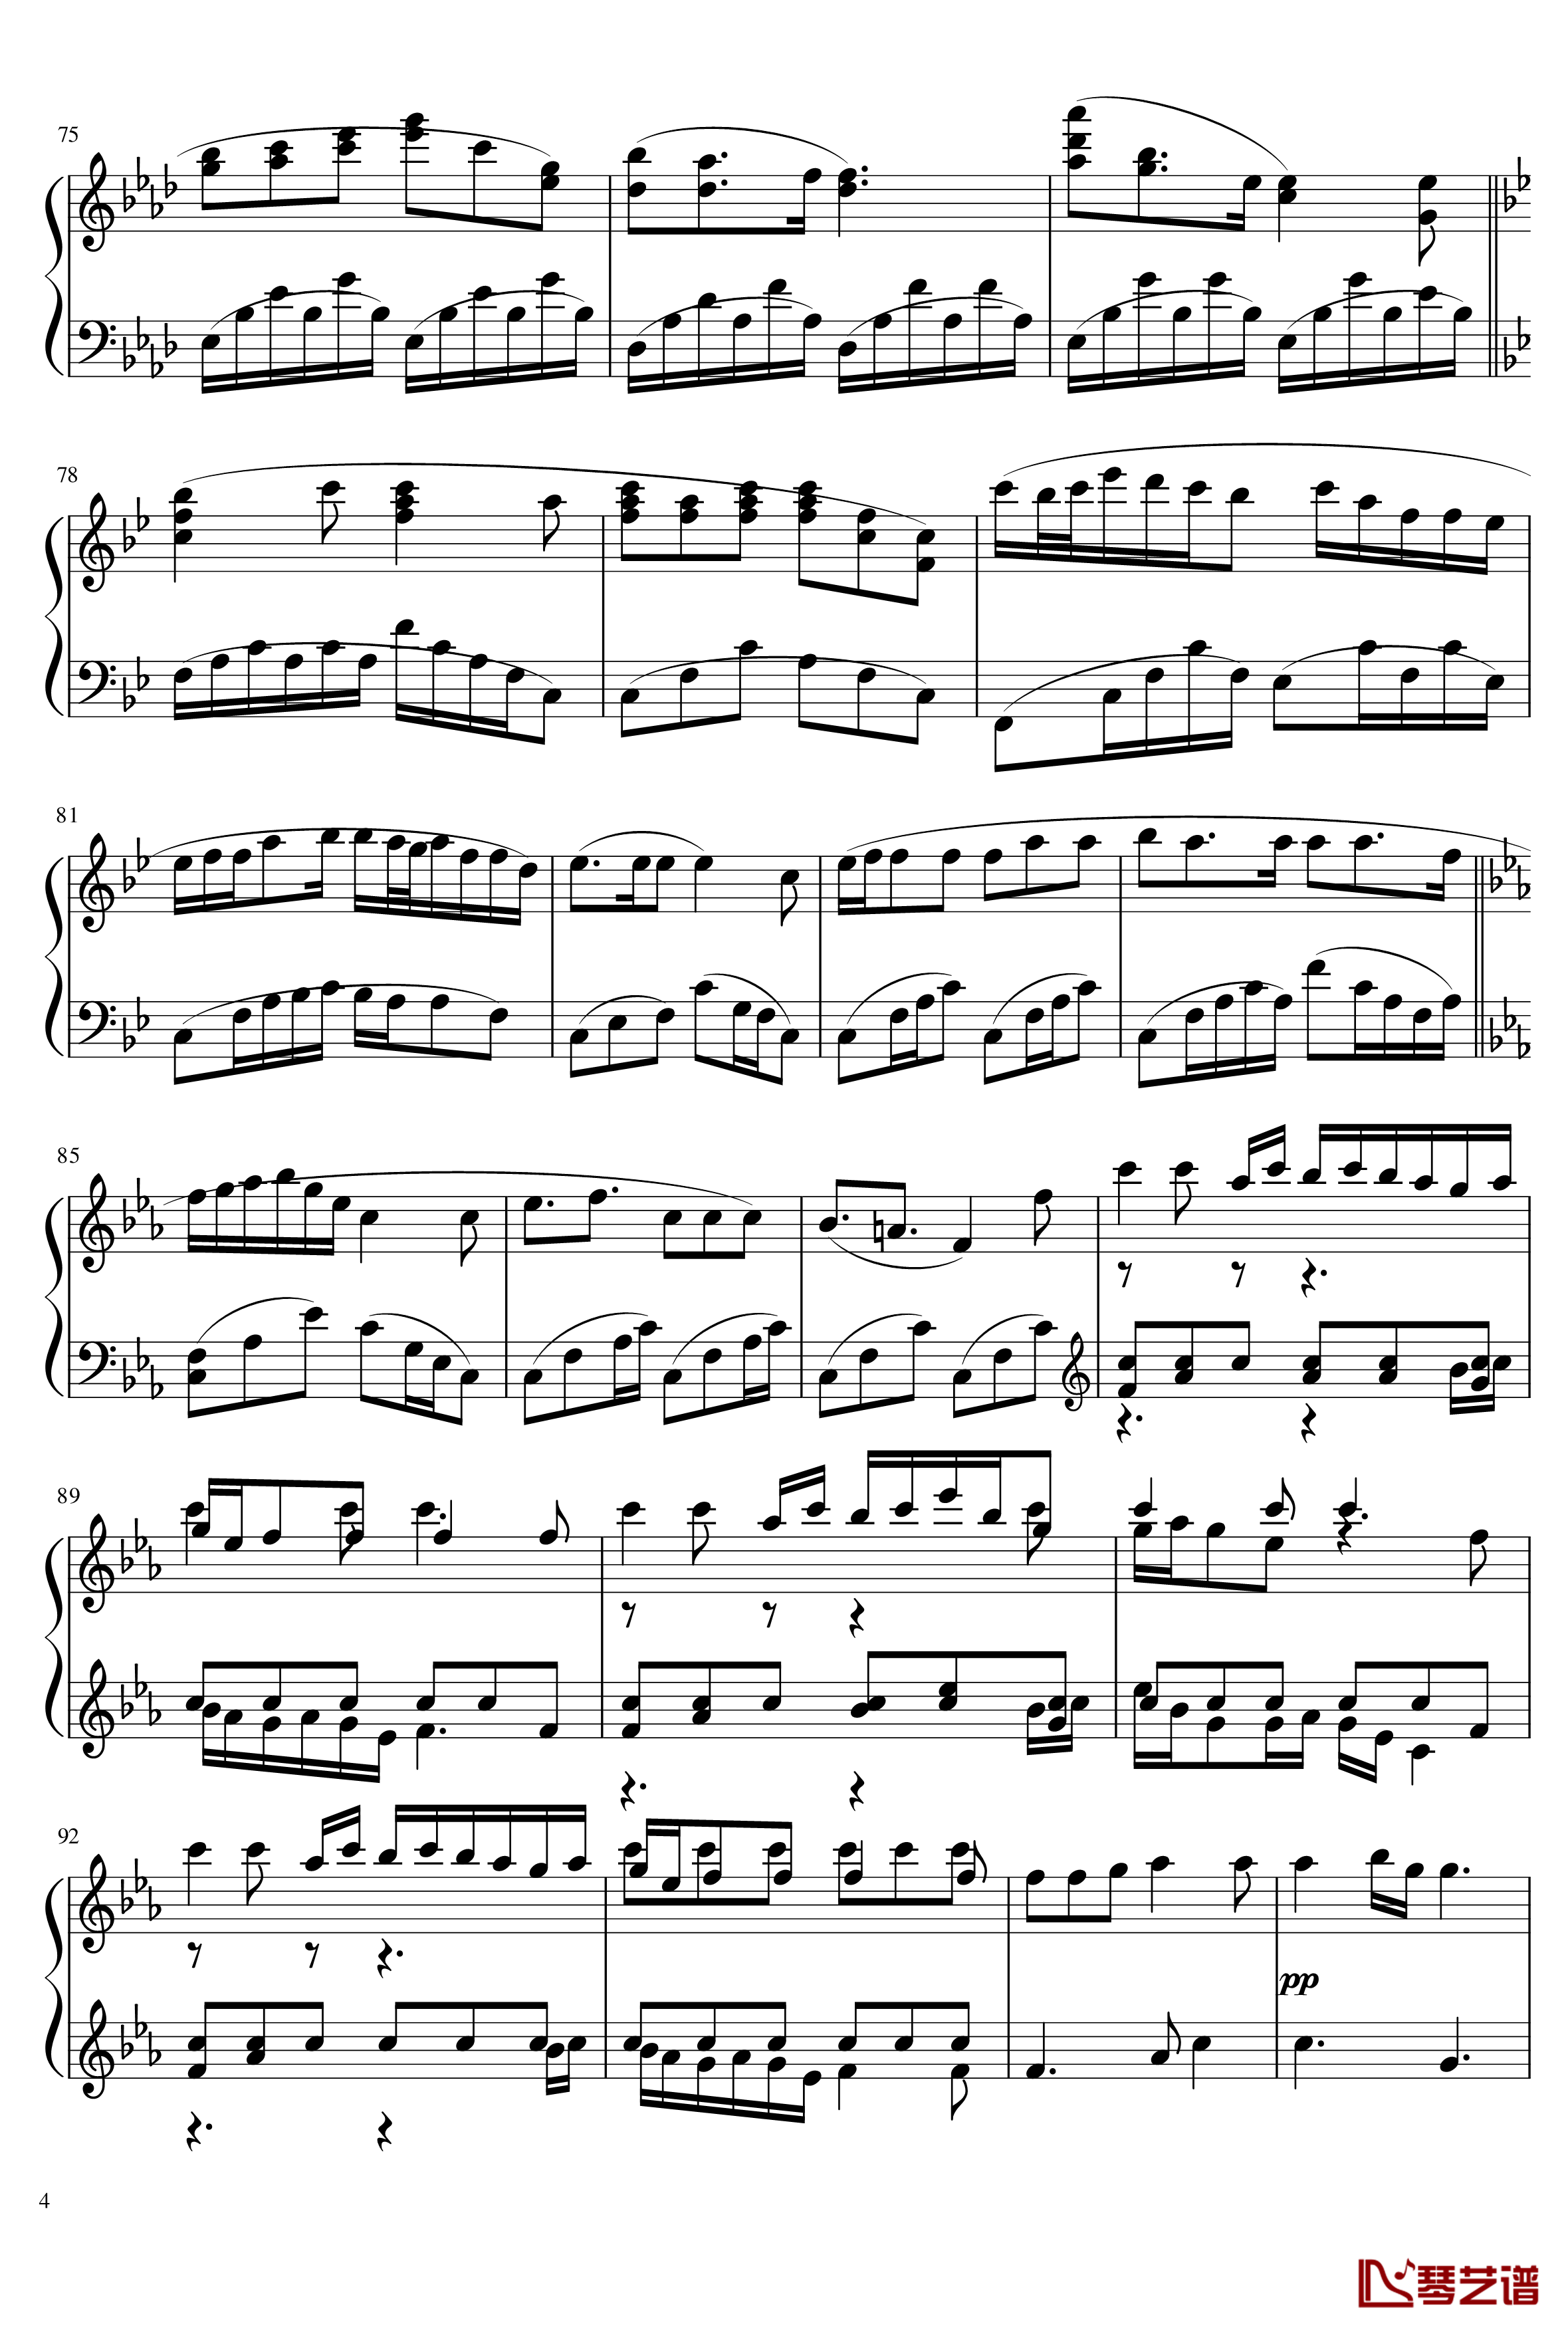 Aria钢琴谱--第四章珈蓝之洞片尾曲-空之境界-尾浦游纪4